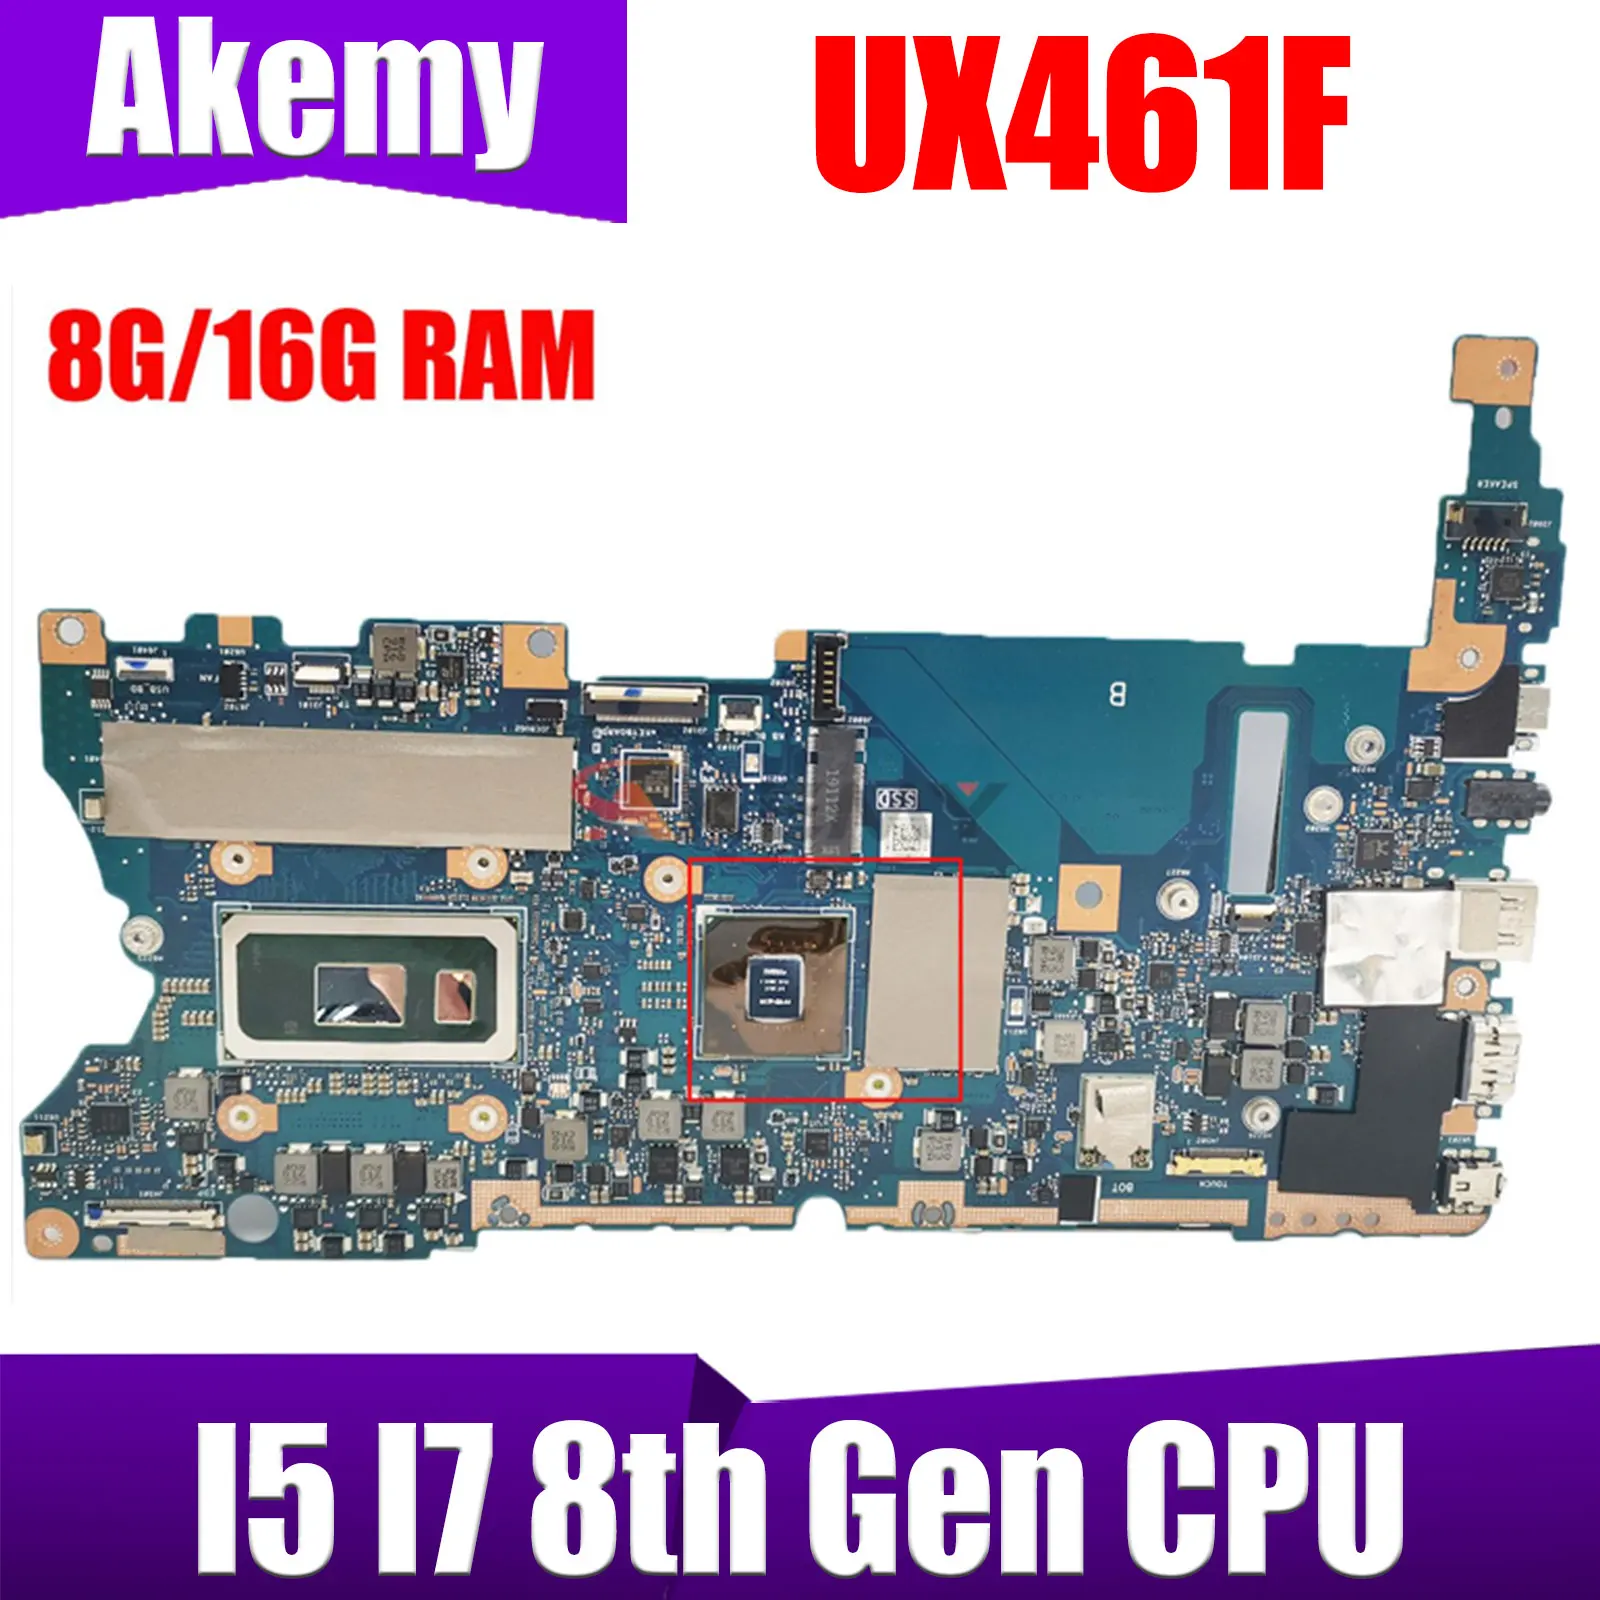 

UX461F Материнская плата ASUS Zenbook Flip 14 UX461 UX461FN UX461FA материнская плата для ноутбука I5 I7 8-го поколения 8 ГБ/16 ГБ ОЗУ